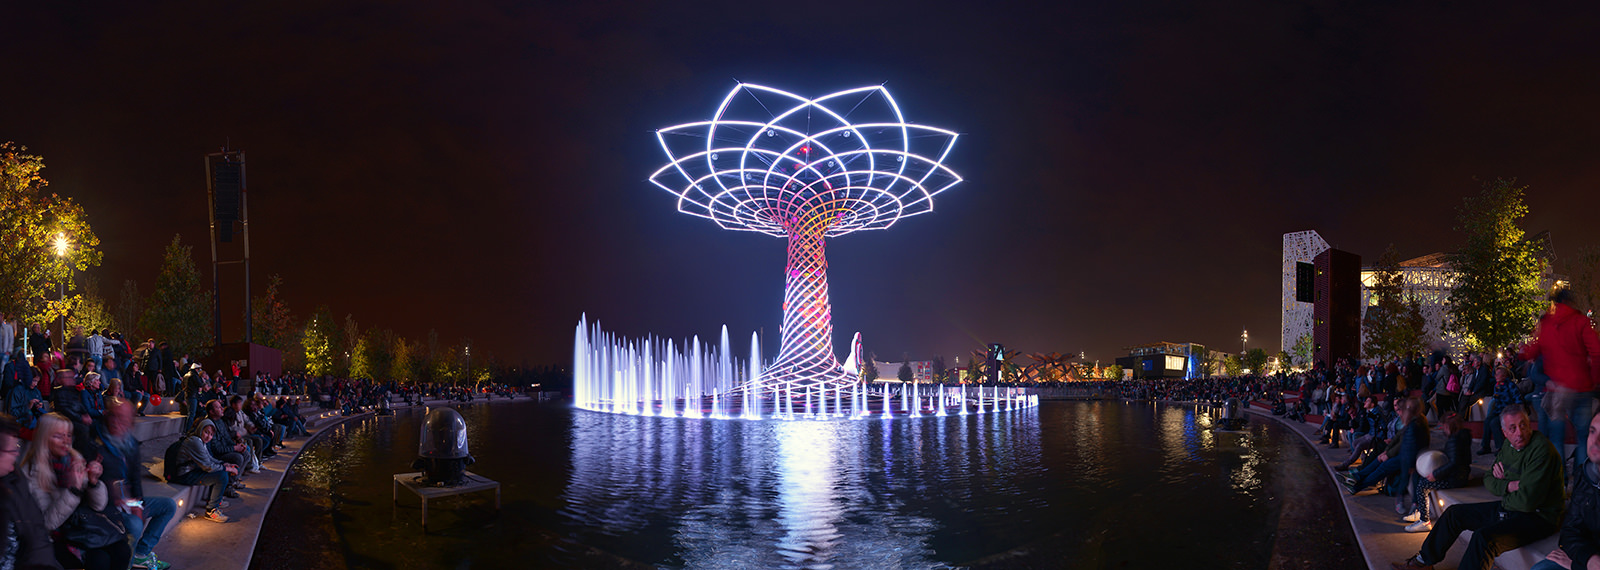 The Tree of Life - Milan, Albero della Vita, EXPO 2015 - Virtual tour